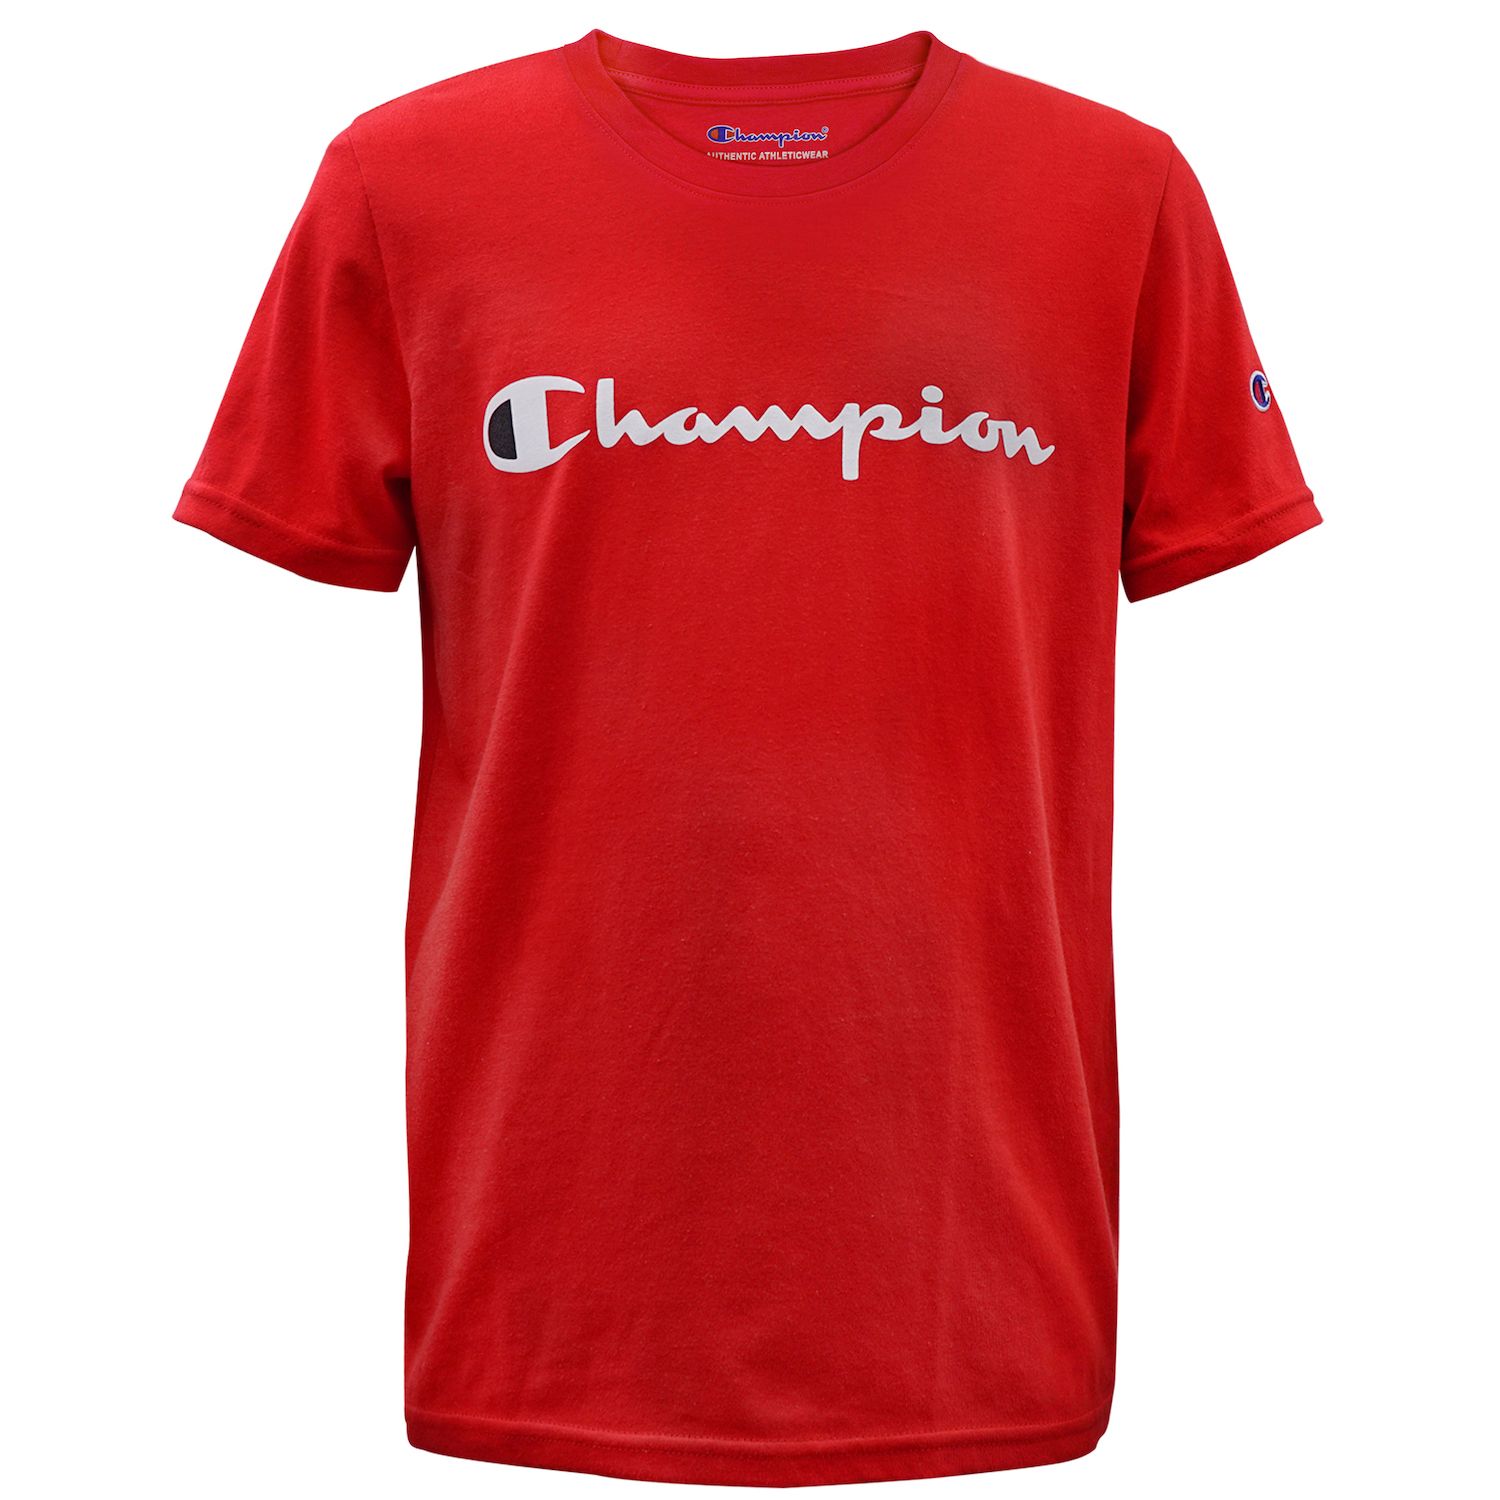 champion tshirt red